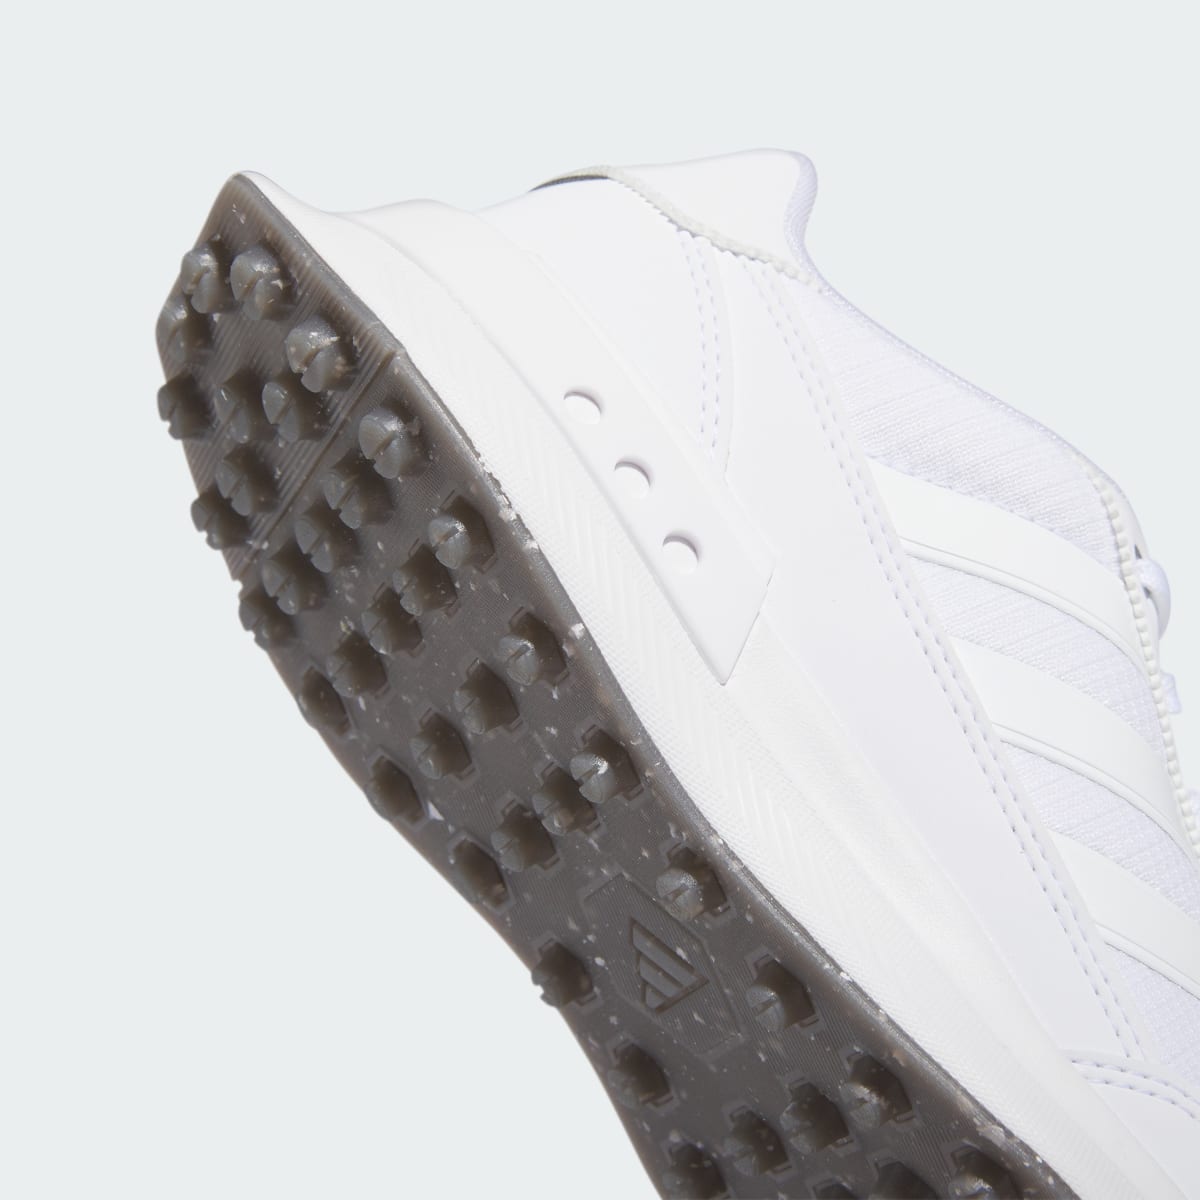 Adidas S2G Spikeless 24 Golf Shoes. 4